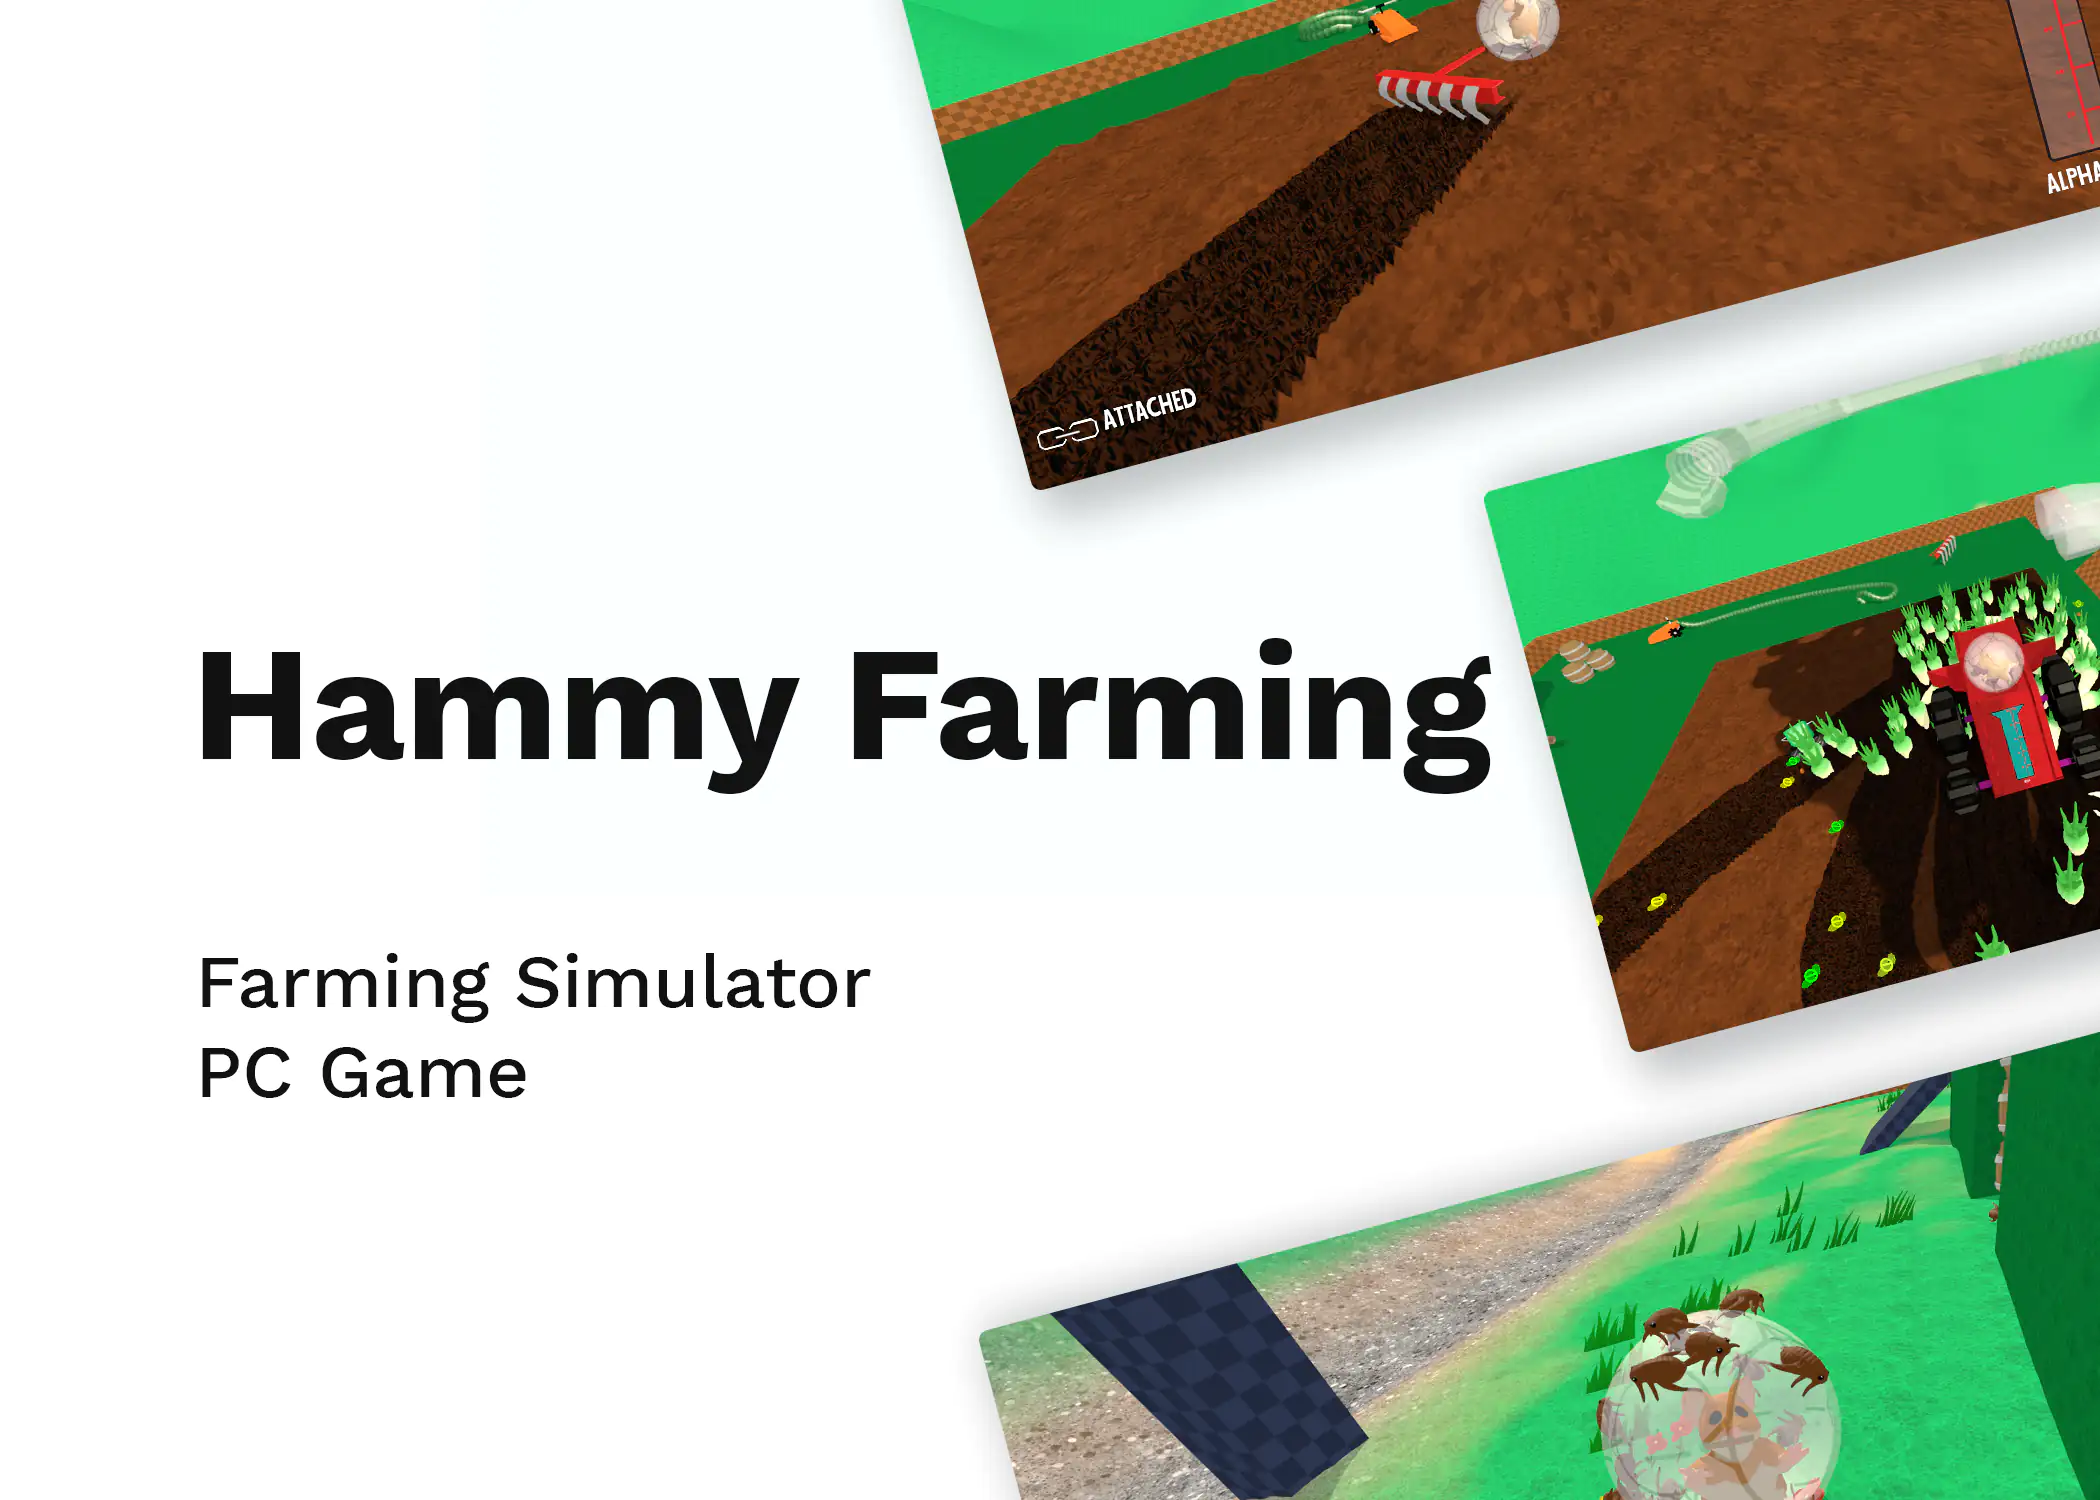 Hammy Farming - Farming Simulator PC Game